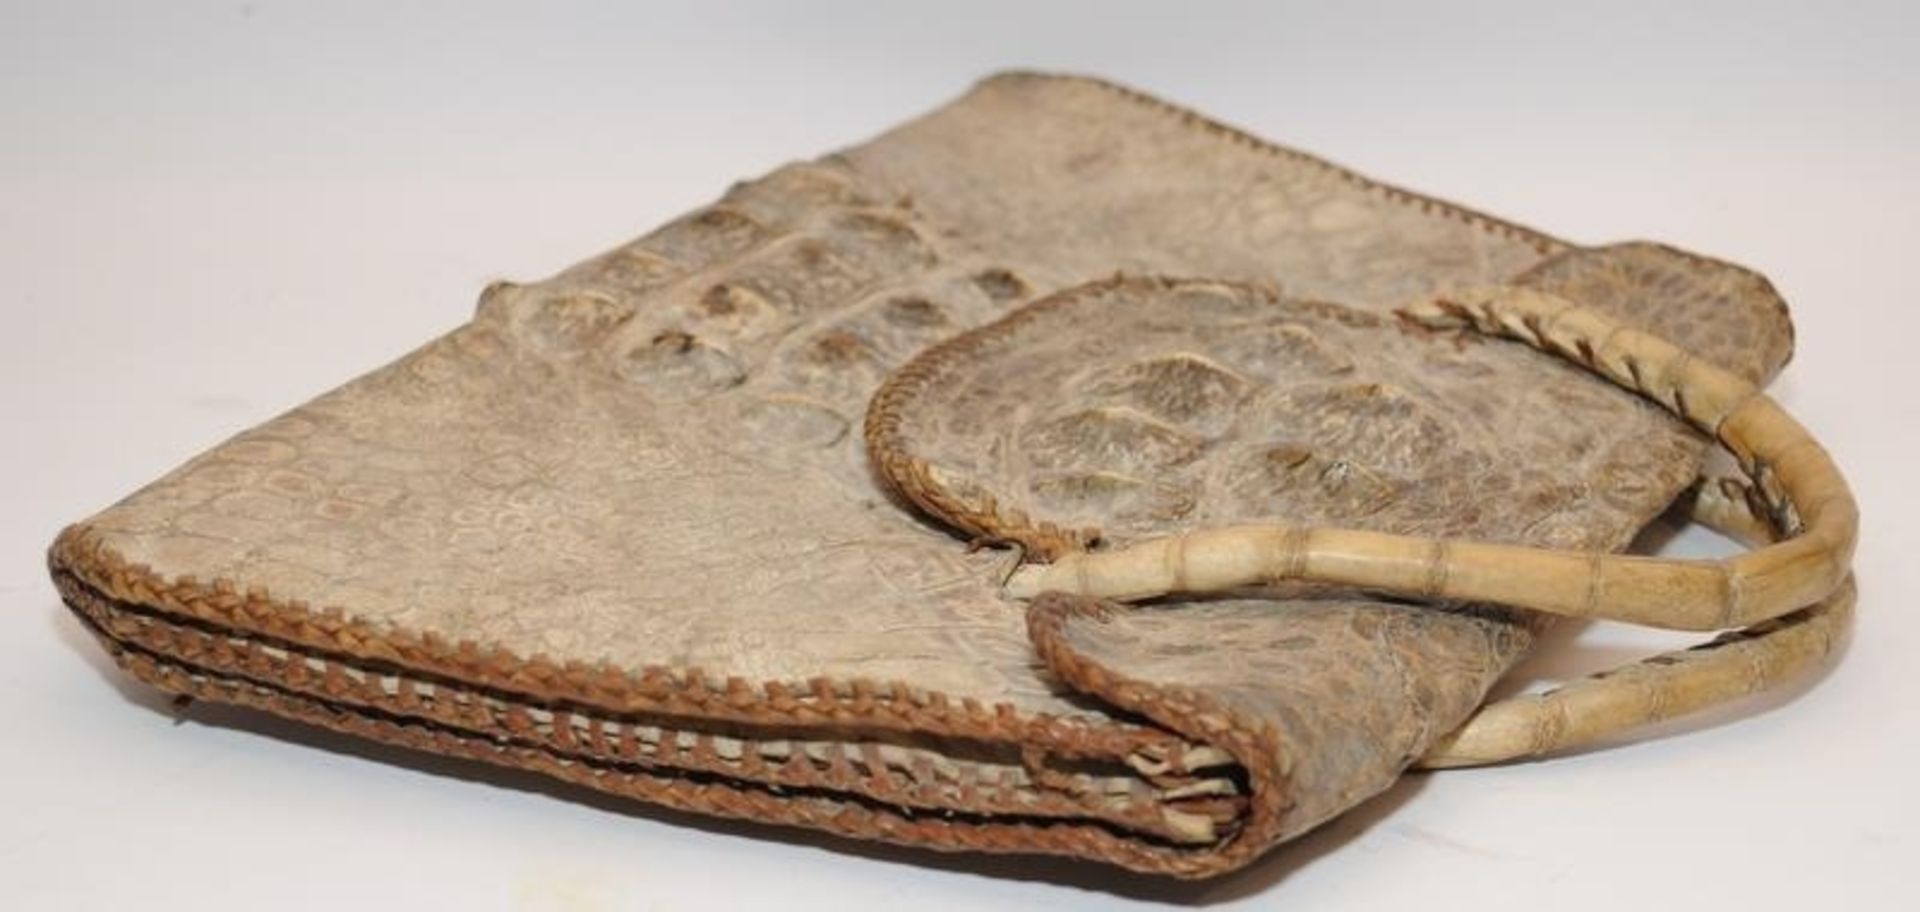 Vintage real alligator skin handbag. 30cms across at widest point - Image 3 of 4